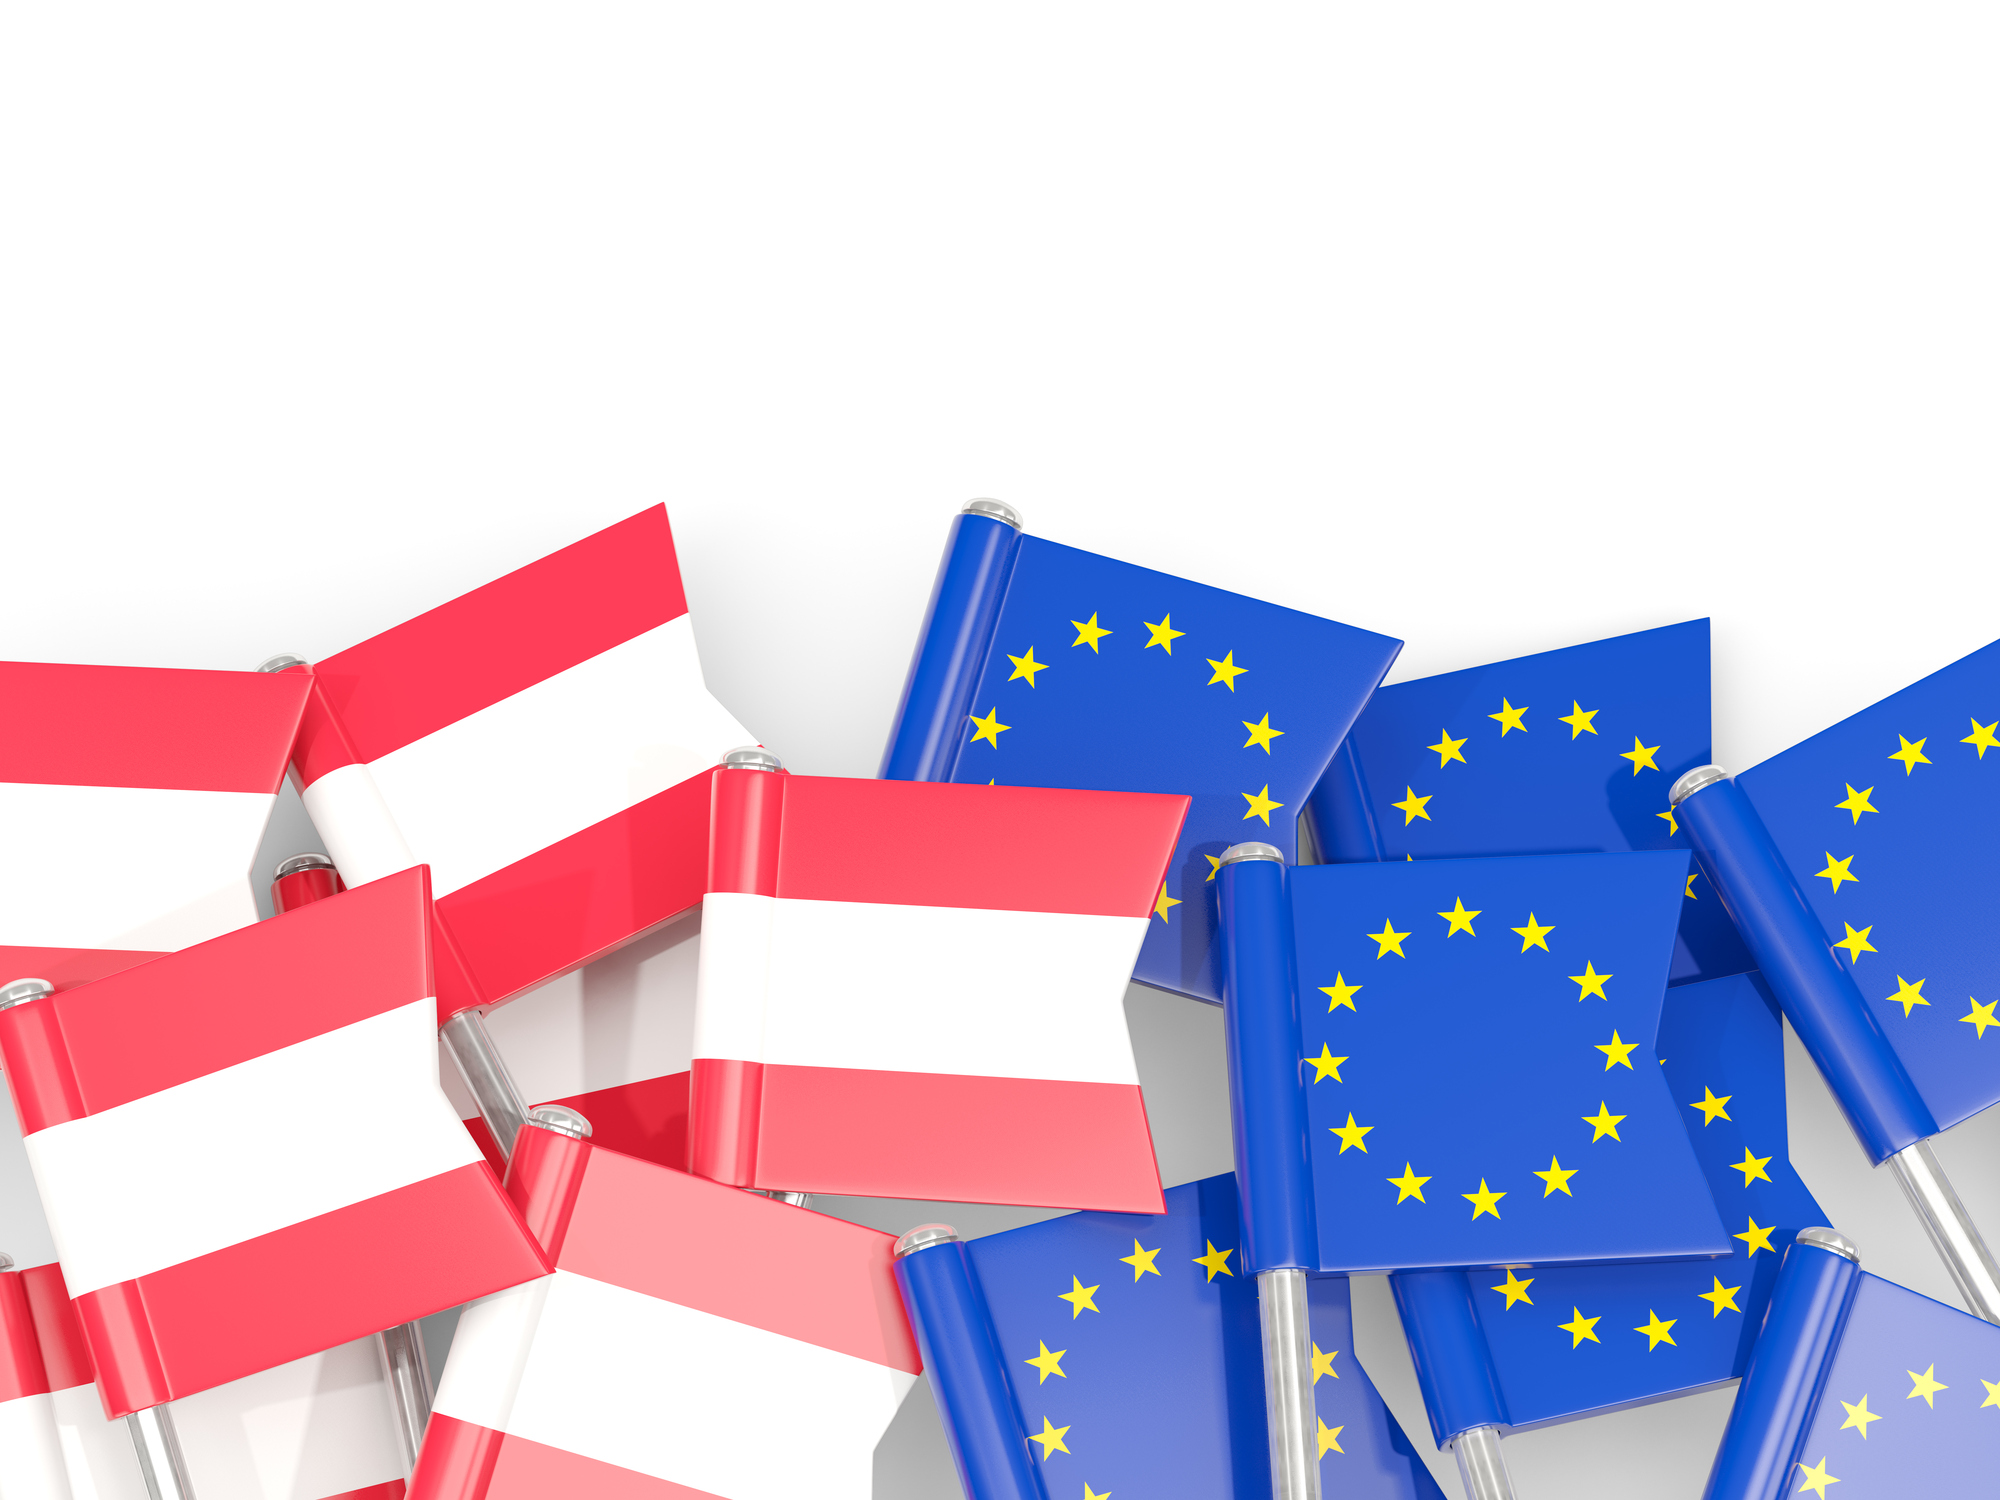 Am Sonntag übernimmt die österreichische Regierung die EU-Ratspräsidentschaft: In welche Richtung wird der Wind wehen?